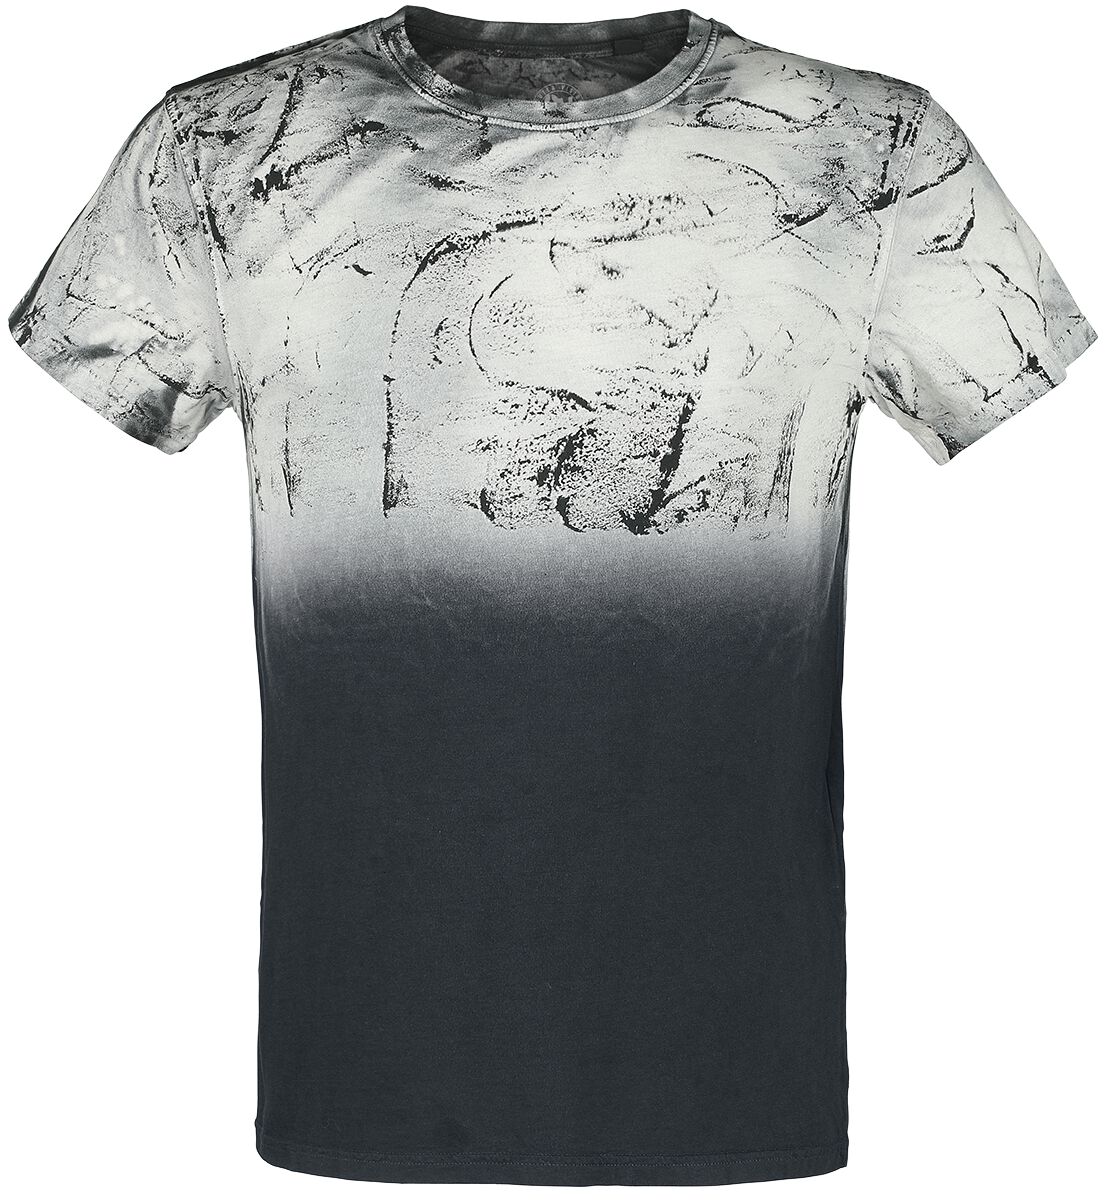 Outer Vision T-Shirt - Man's T-Shirt Spatolato - S bis 4XL - für Männer - Größe XXL - schwarz/grau von Outer Vision